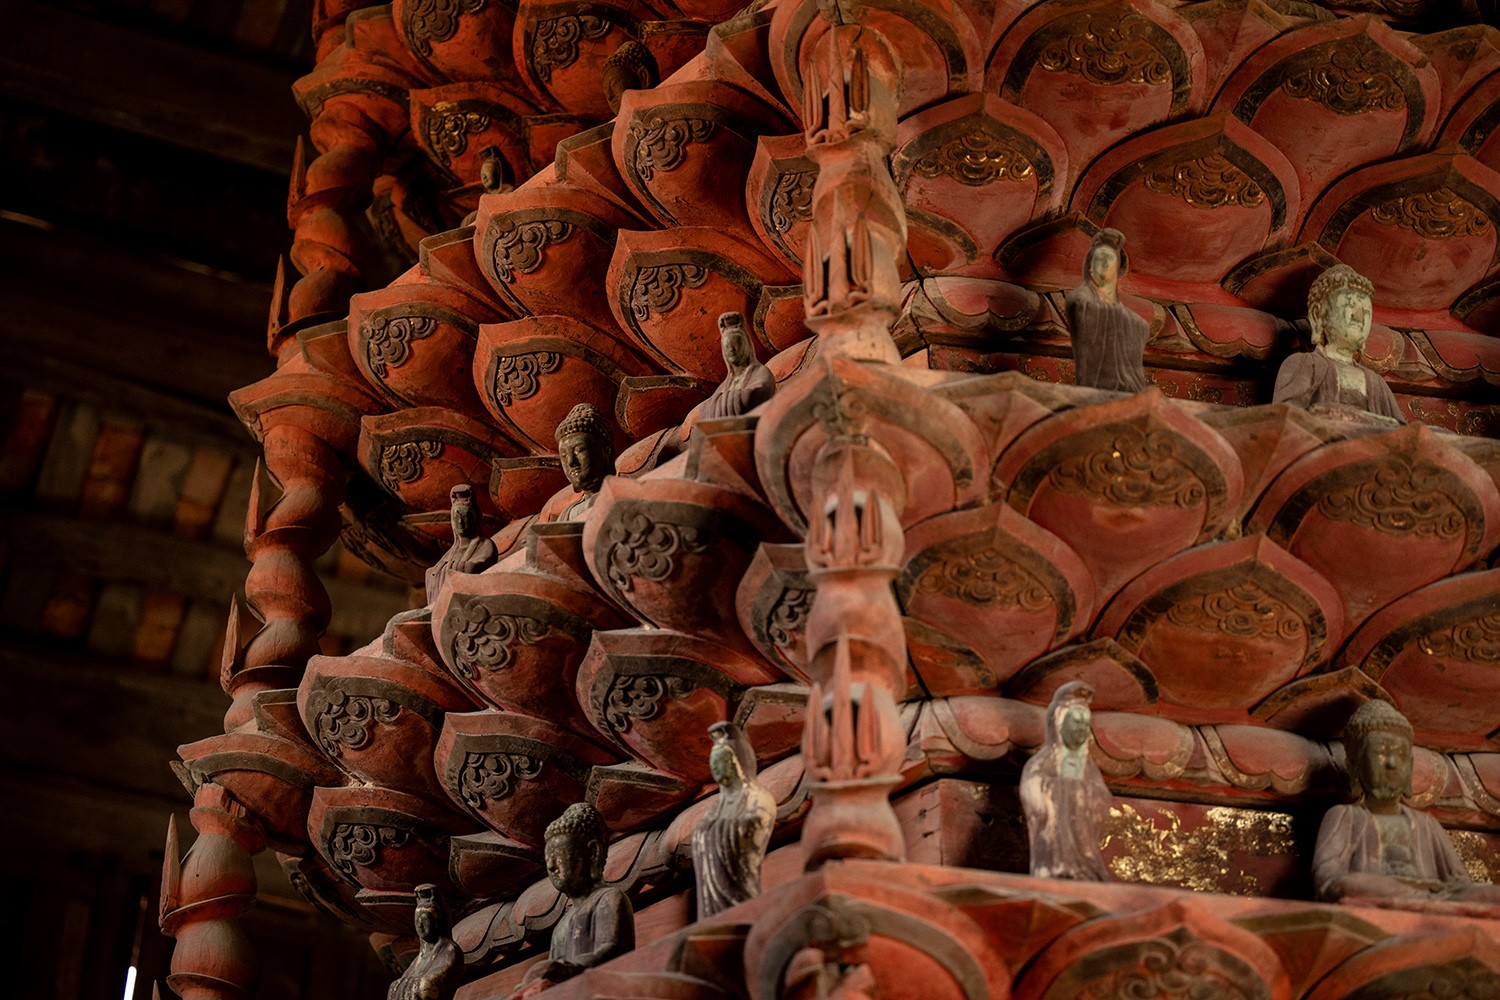 Theo trụ trì chùa Giám, tòa Cửu phẩm liên hoa được xác định đã trên 300 năm tuổi và được Chính phủ công nhận là bảo vật quốc gia năm 2015.